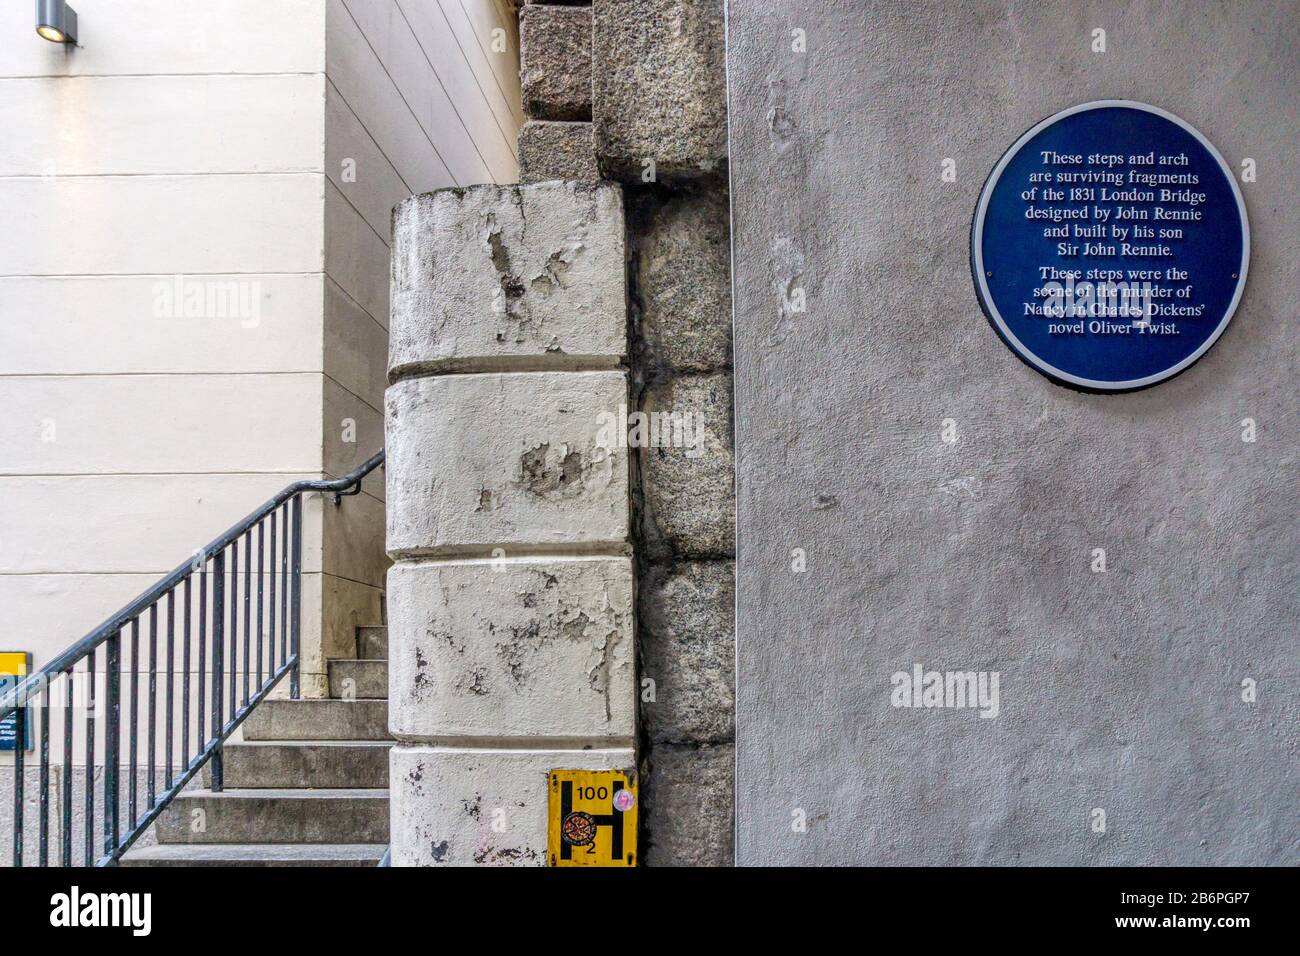 La plaque bleue sous le pont de Londres commémore le vieux pont de Londres et indique que les marches adjacentes ont été la scène du meurtre de Nancy à Oliver Twist. Banque D'Images